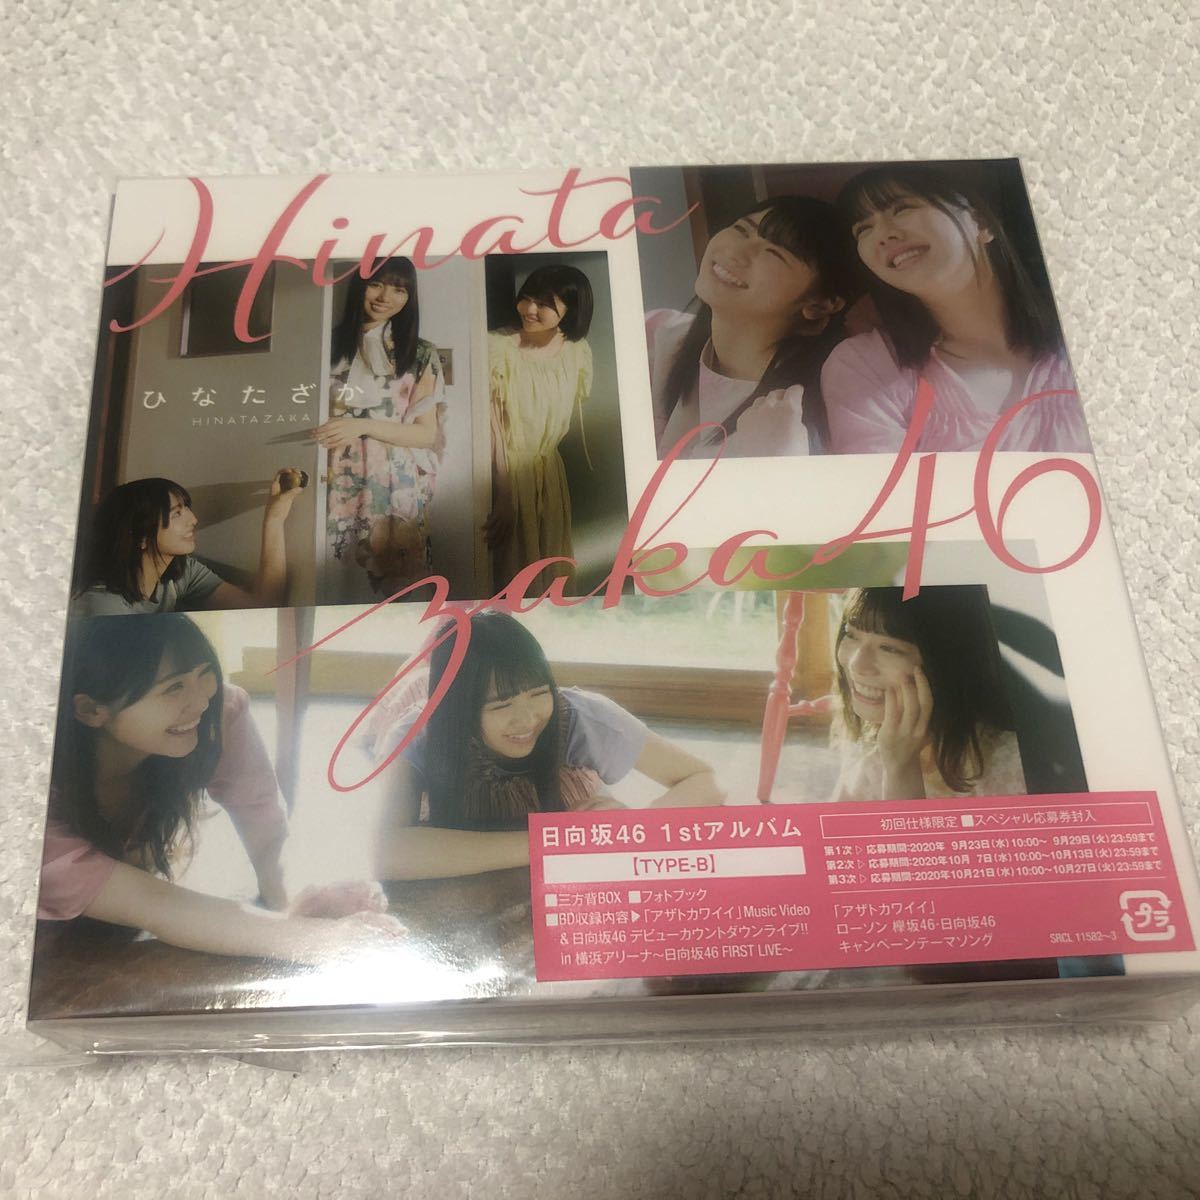 値下げ】 日向坂46 1stアルバムひなたざか CD 豪華版 通常盤3枚セット